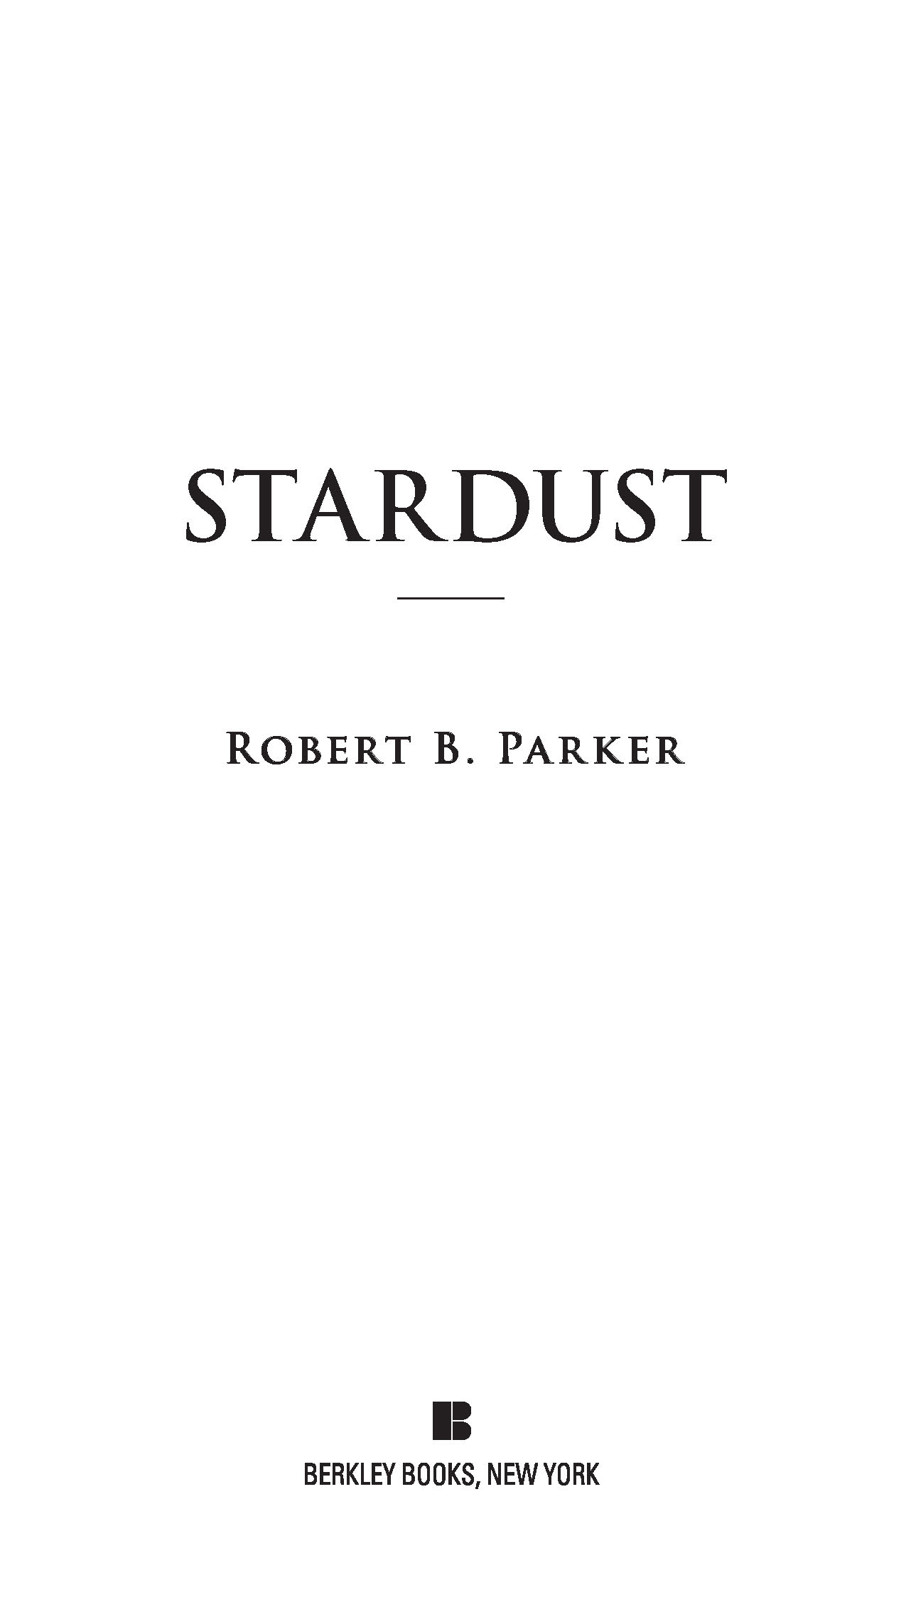 Stardust by Robert B. Parker